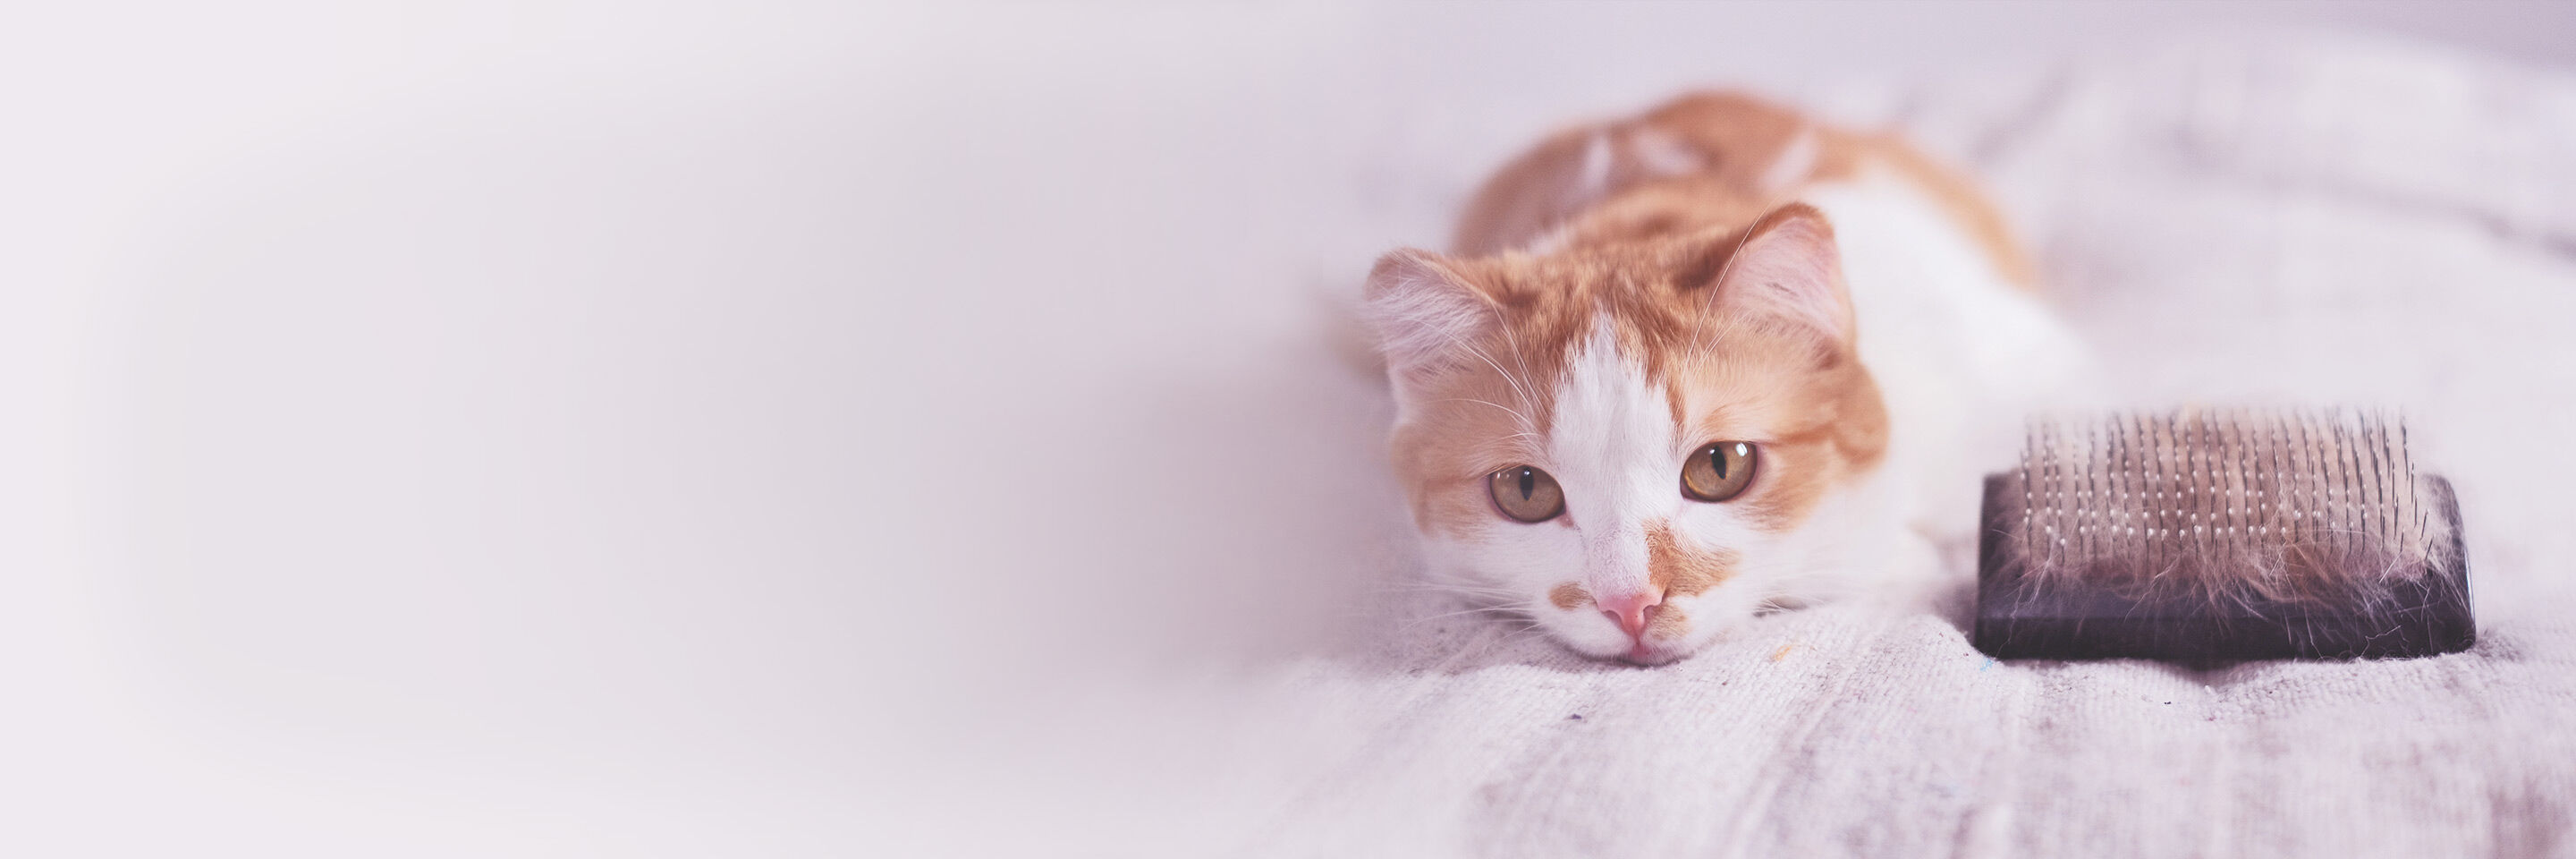 Weiß-rote Katze liegt auf dem Bett. Neben ihr eine Bürste mit viel Fell.